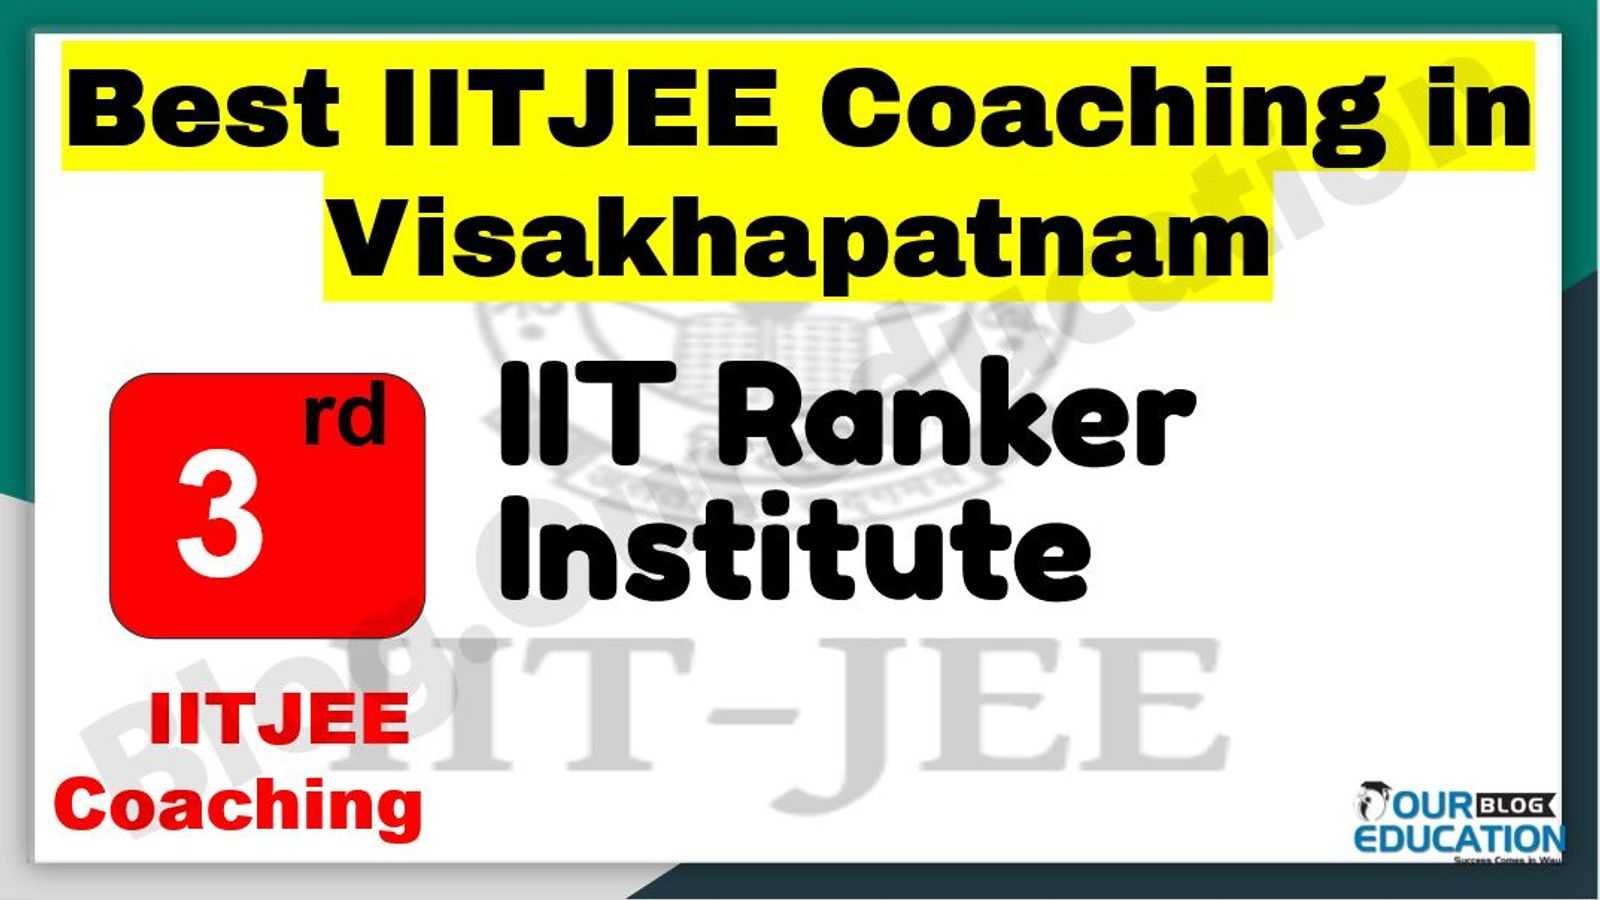 Best IITJEE Coaching in Visakhapatnam